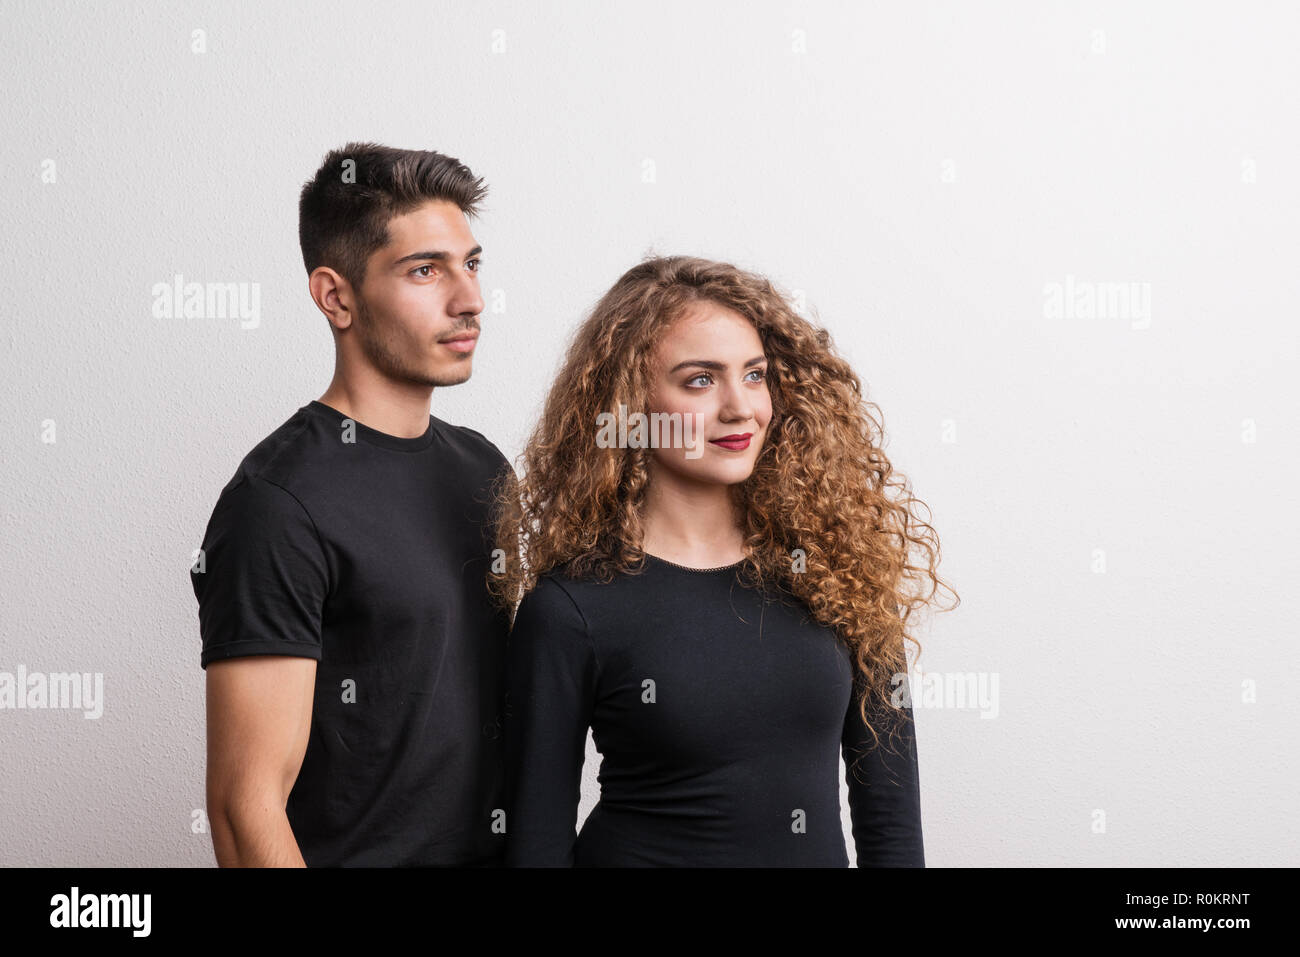 Porträt eines jungen Paares in einem Studio, das Tragen von schwarzer Kleidung. Stockfoto